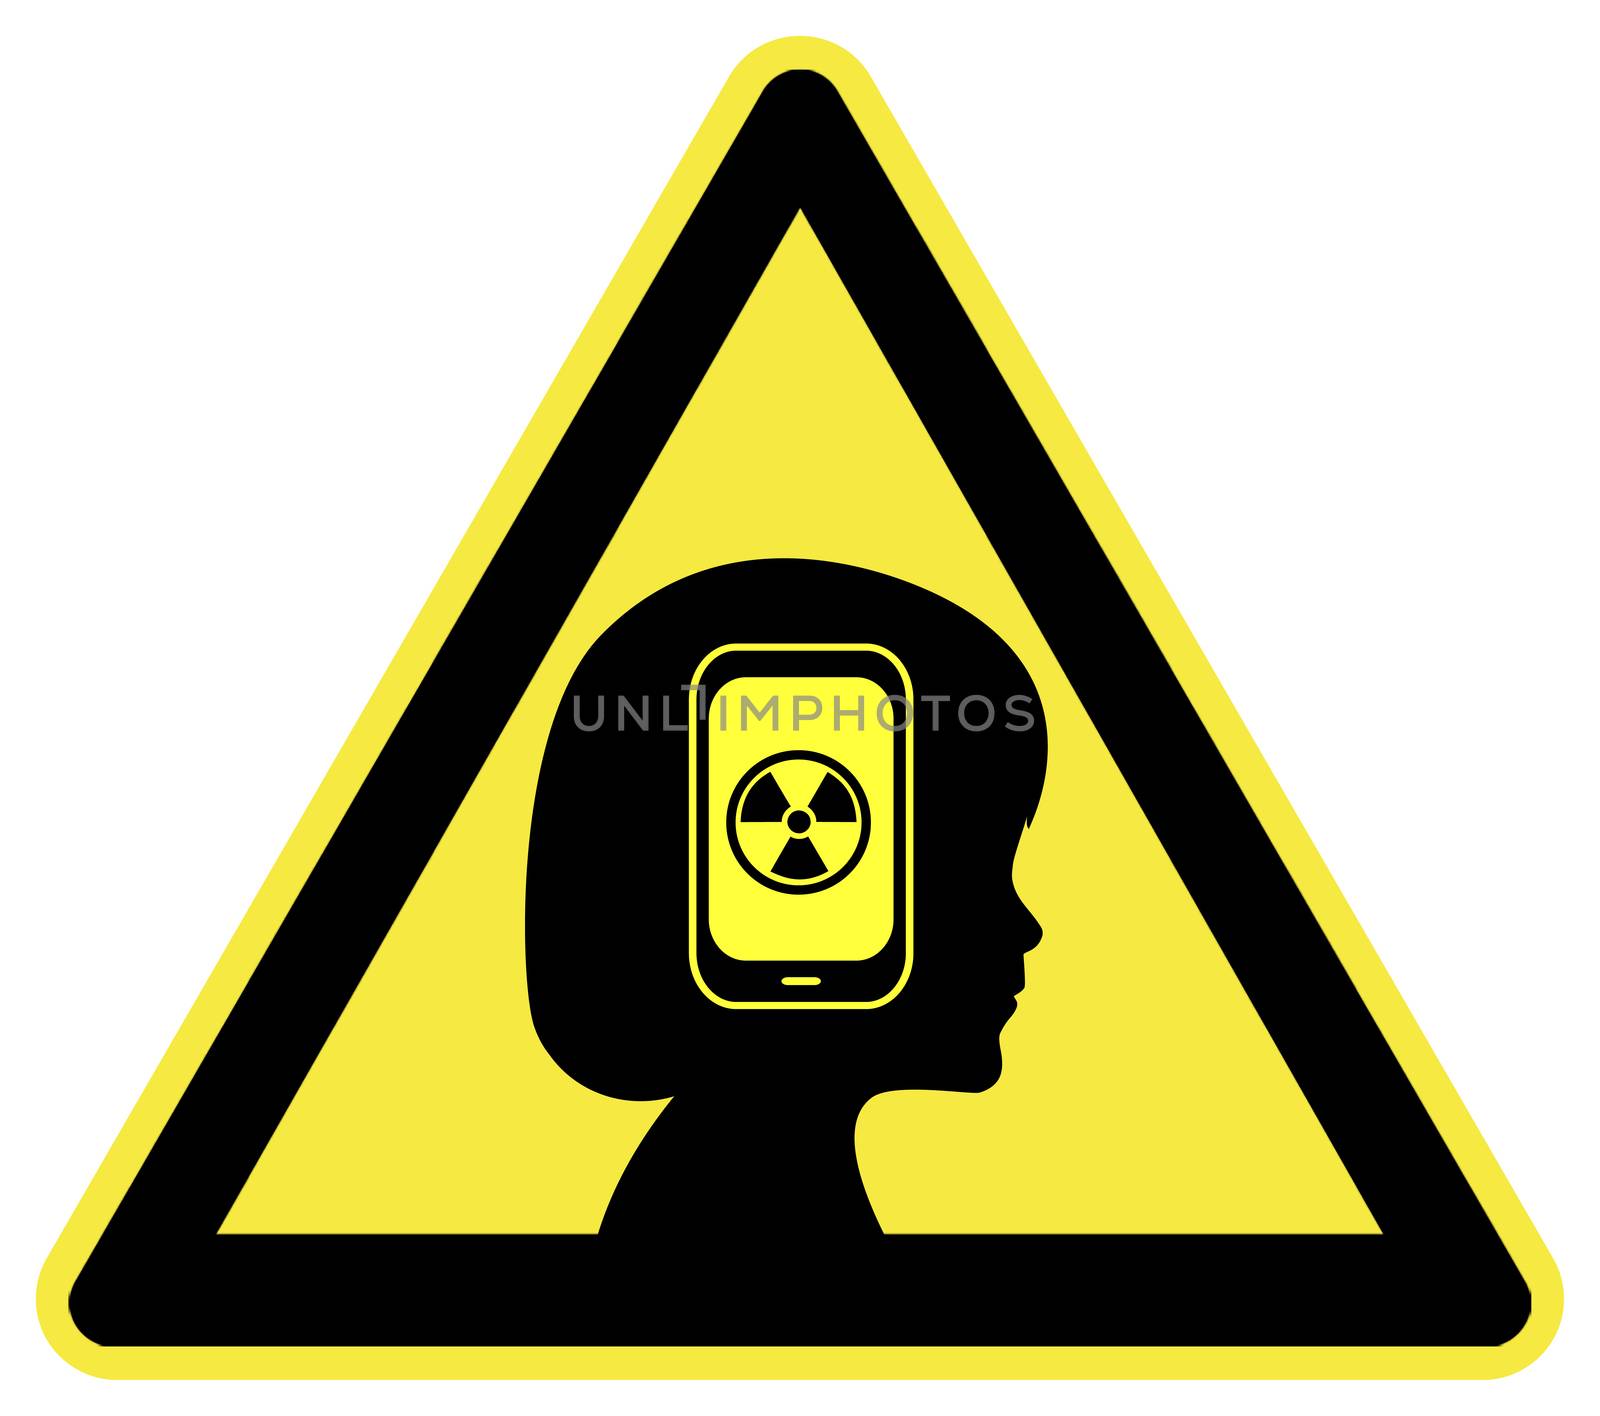 Warning Cell Phone Radiation by Bambara